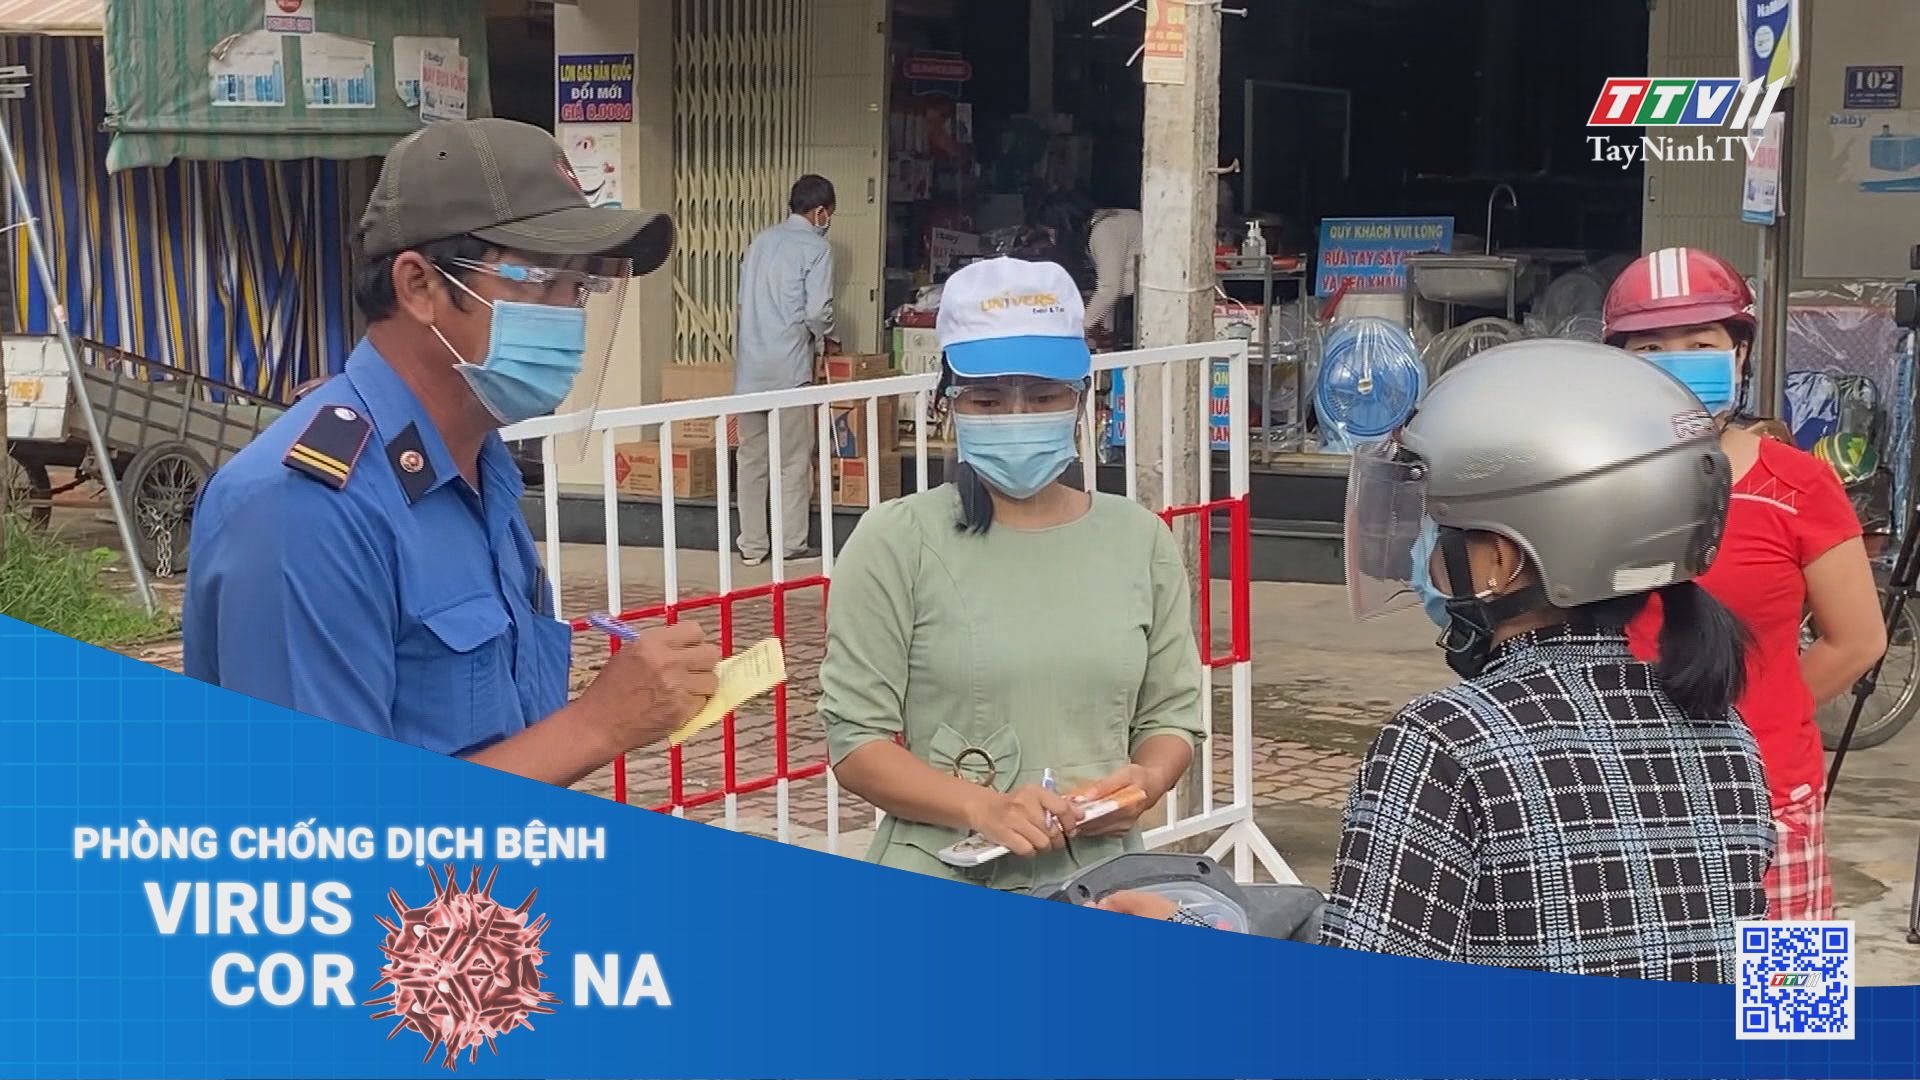 Thành phố Tây Ninh kiểm soát người đi vào chợ bằng phiếu | THÔNG TIN DỊCH COVID-19 | TayNinhTV